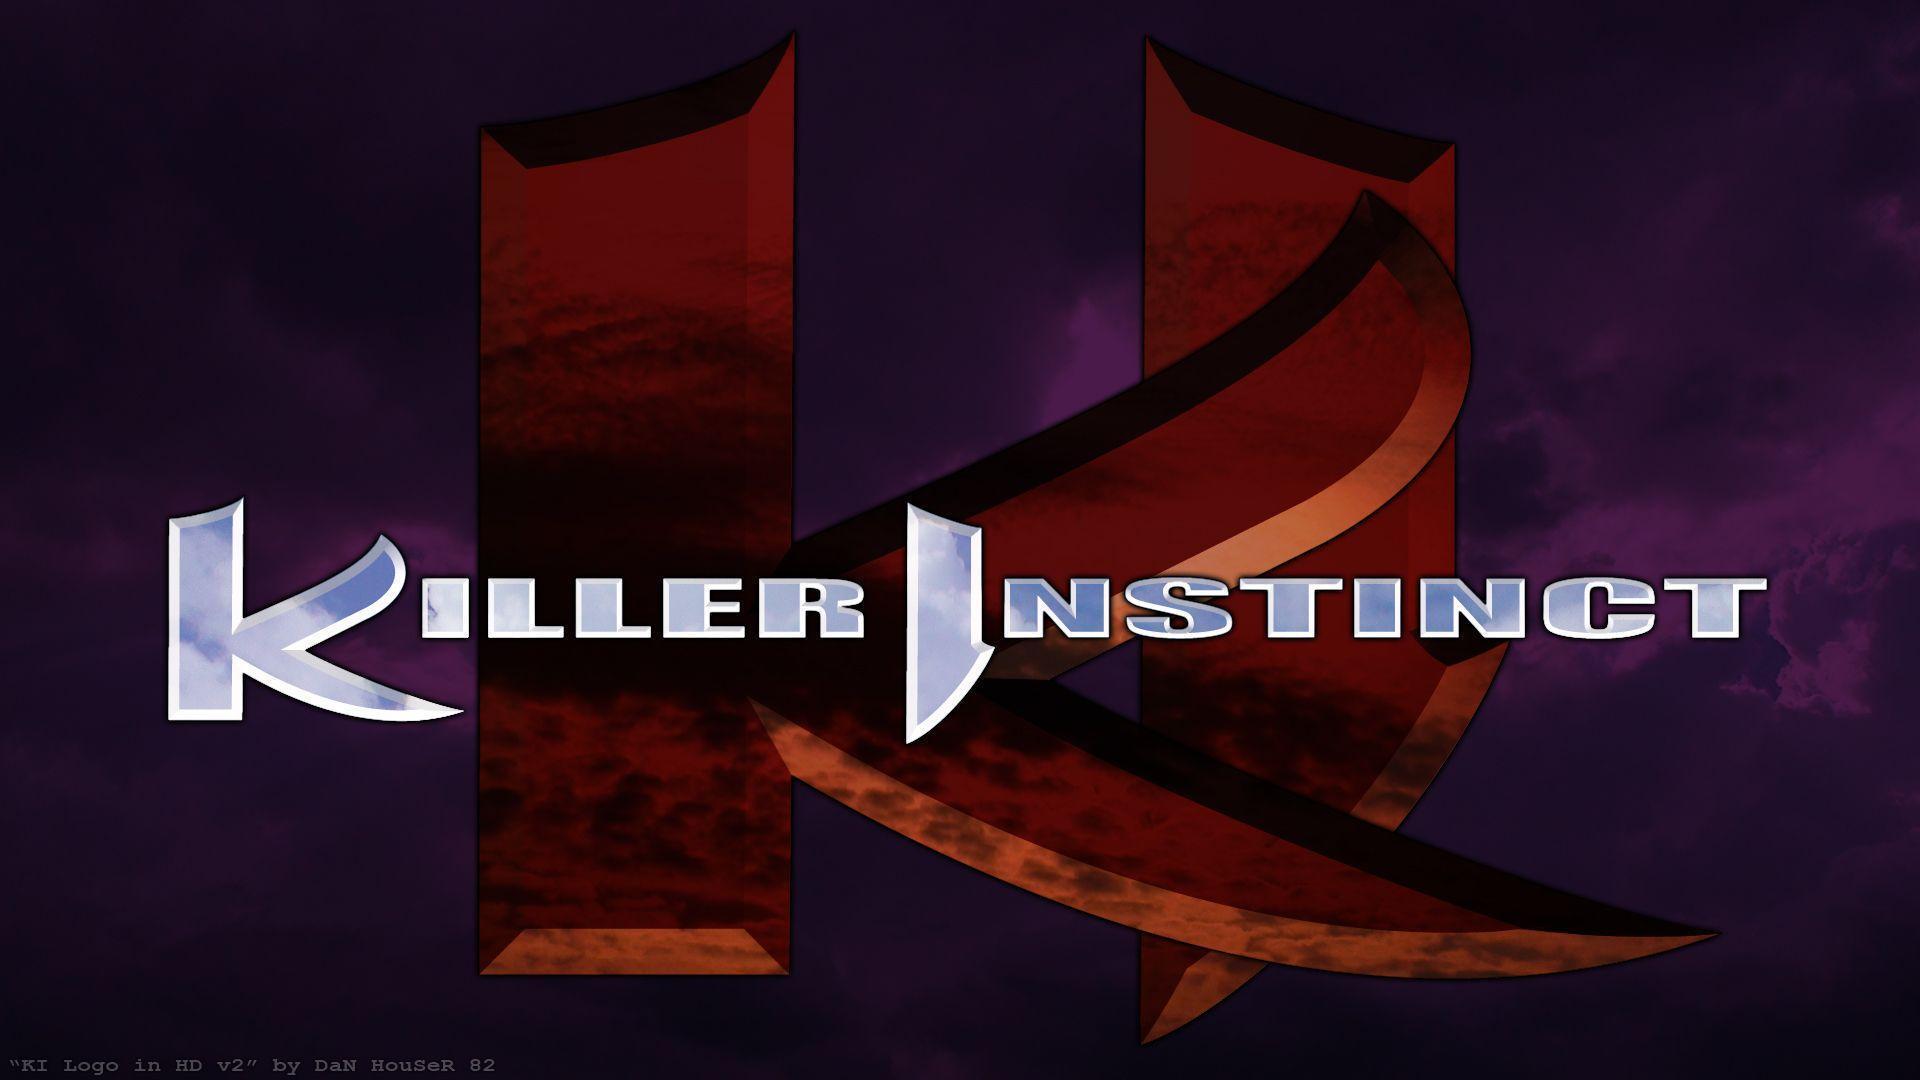 Other Jobs On Killer Instinct Fans